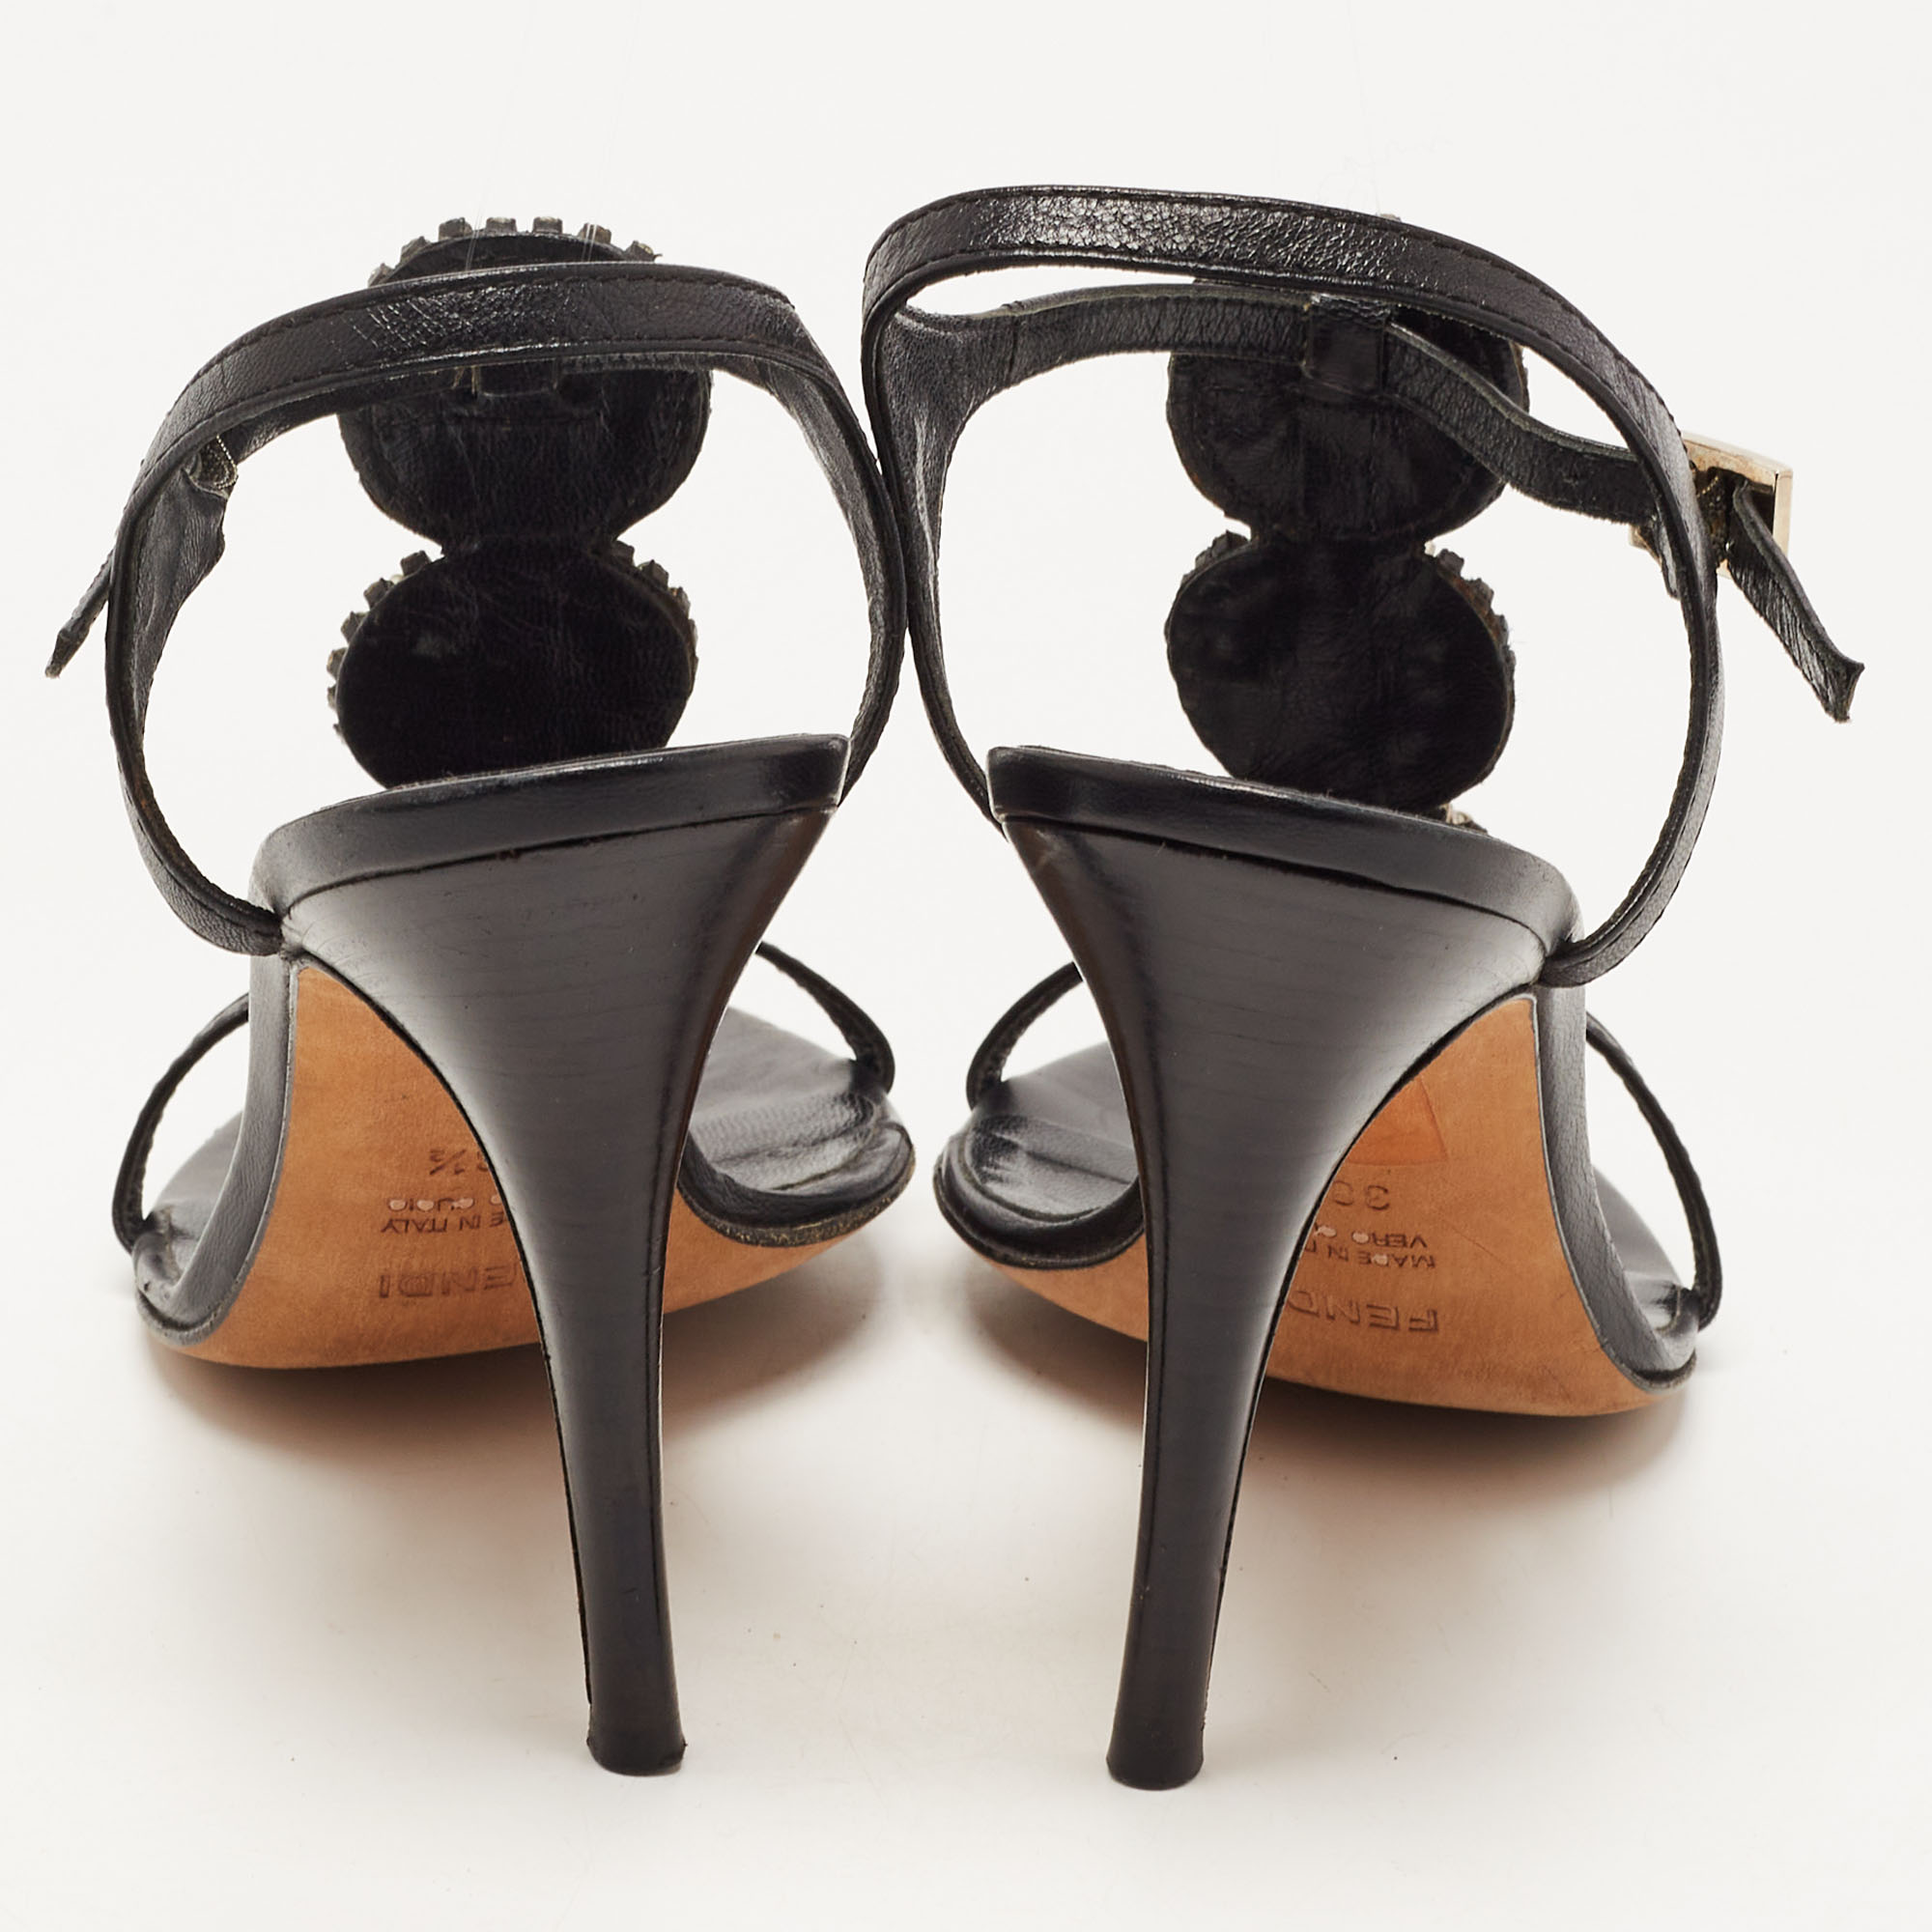 Fendi Black Leather Crystal Embellished Ankle Strap Sandals Size 38.5